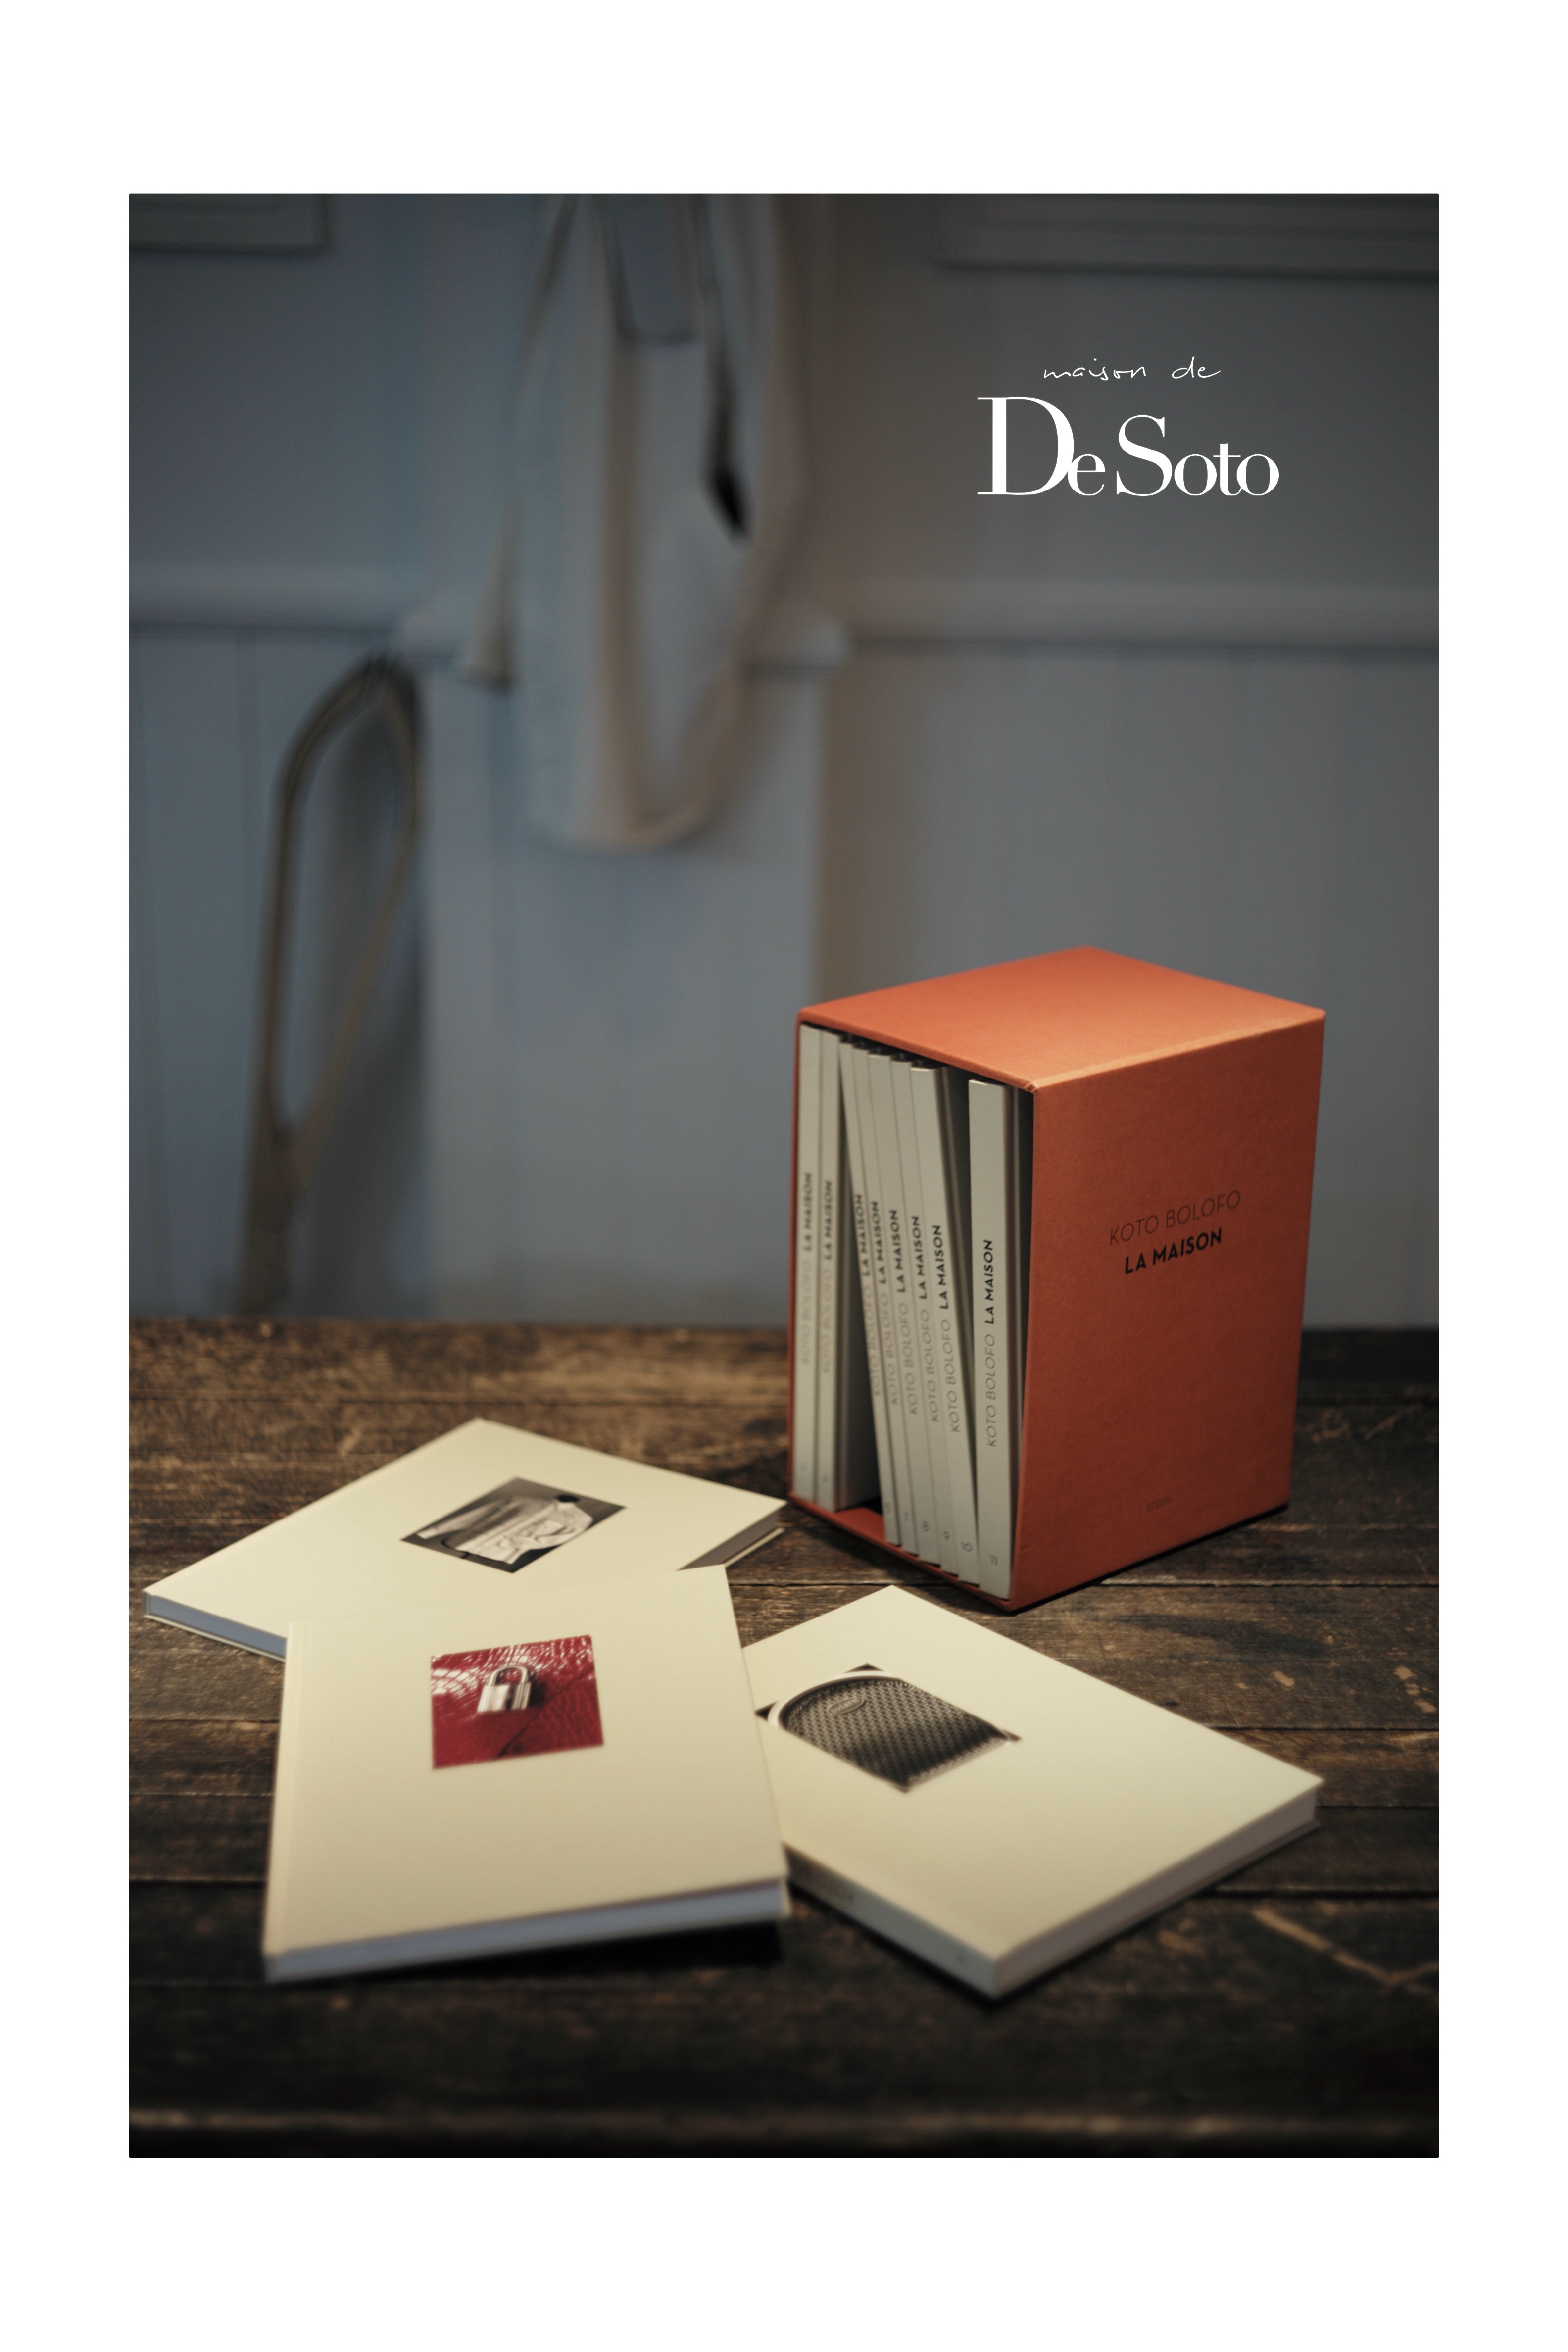 KOTO BOLOFO - DeSoto CLOTHING COMPANY